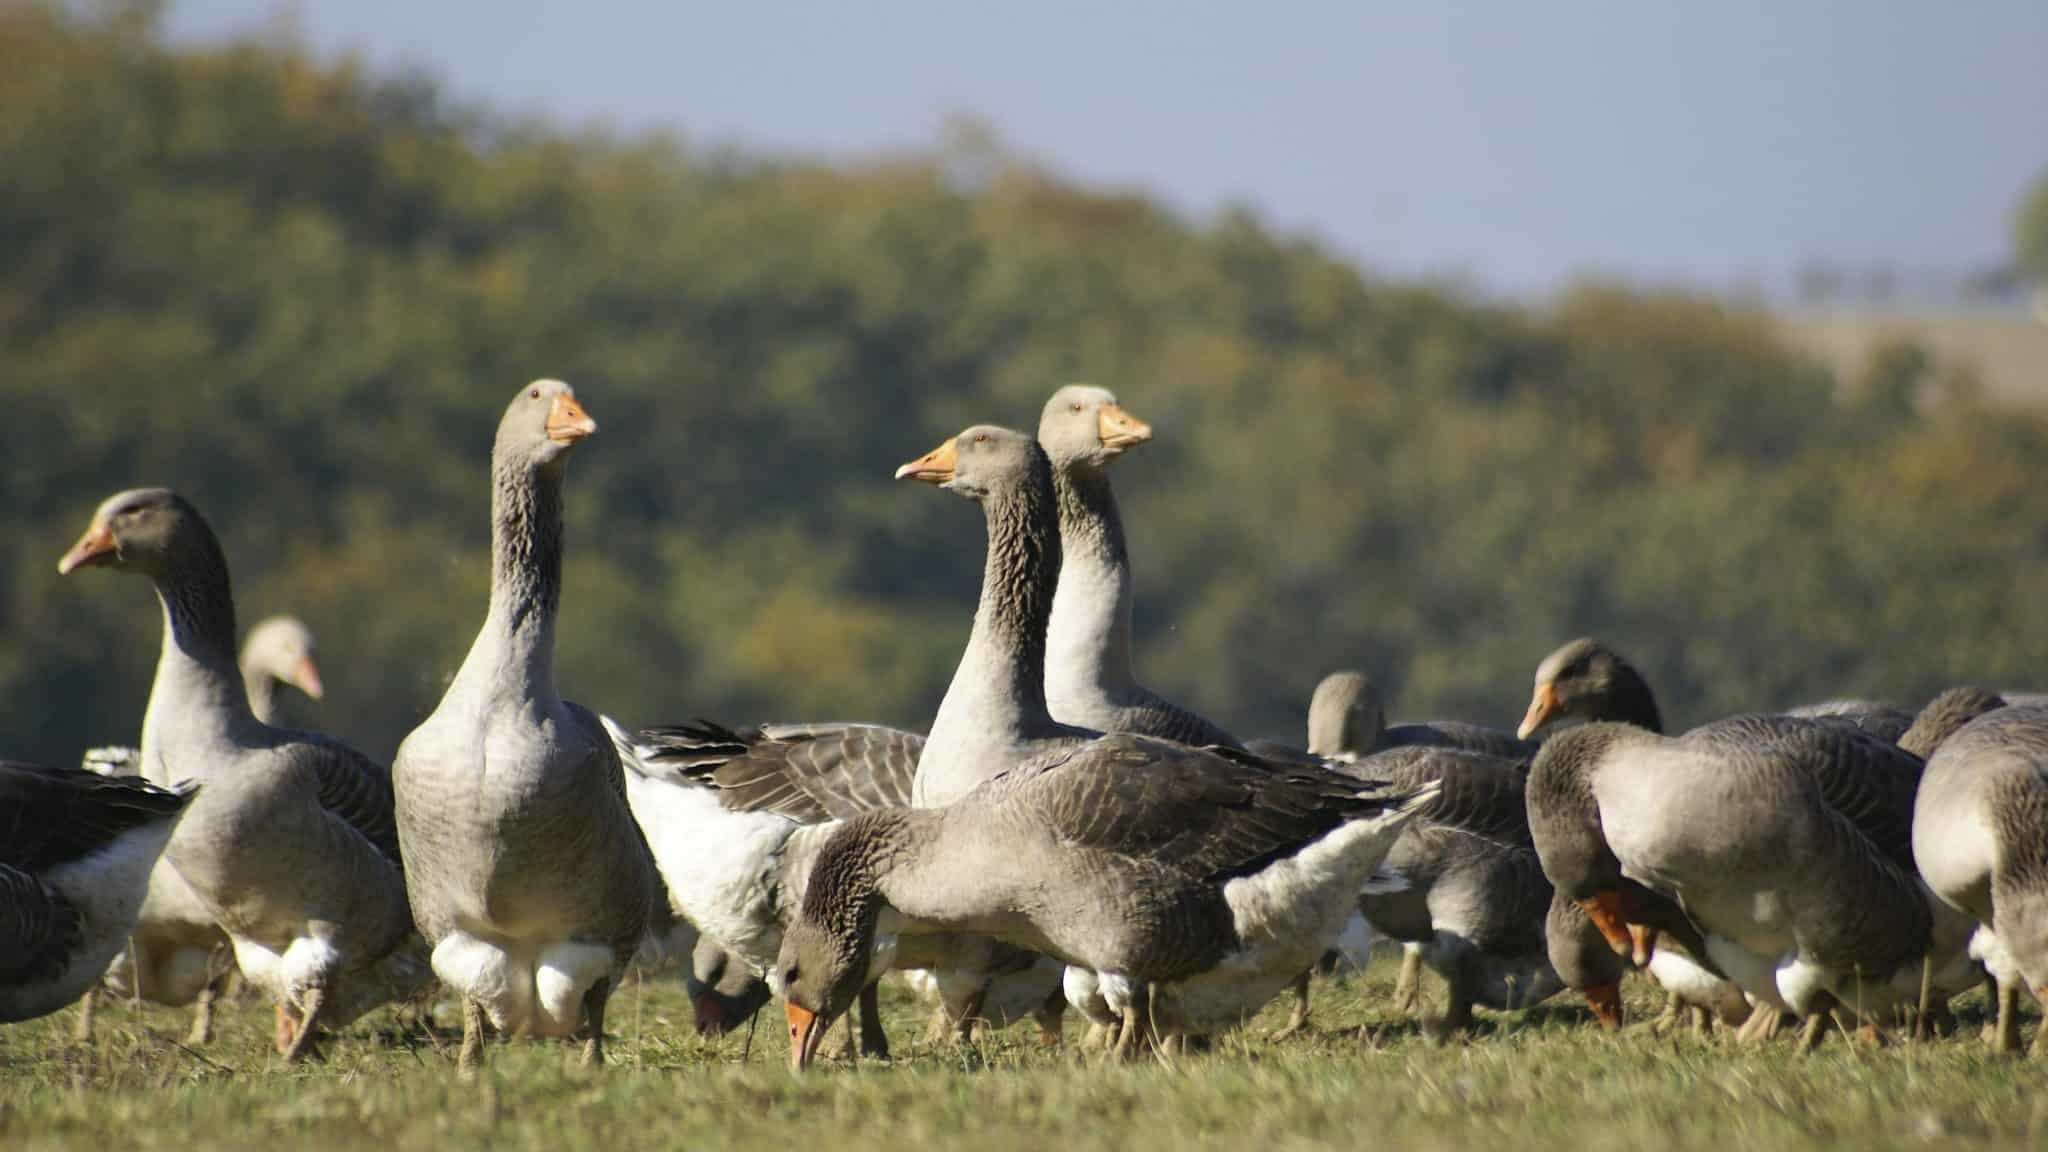 Une nouvelle technique permet de produire du foie gras sans gavage